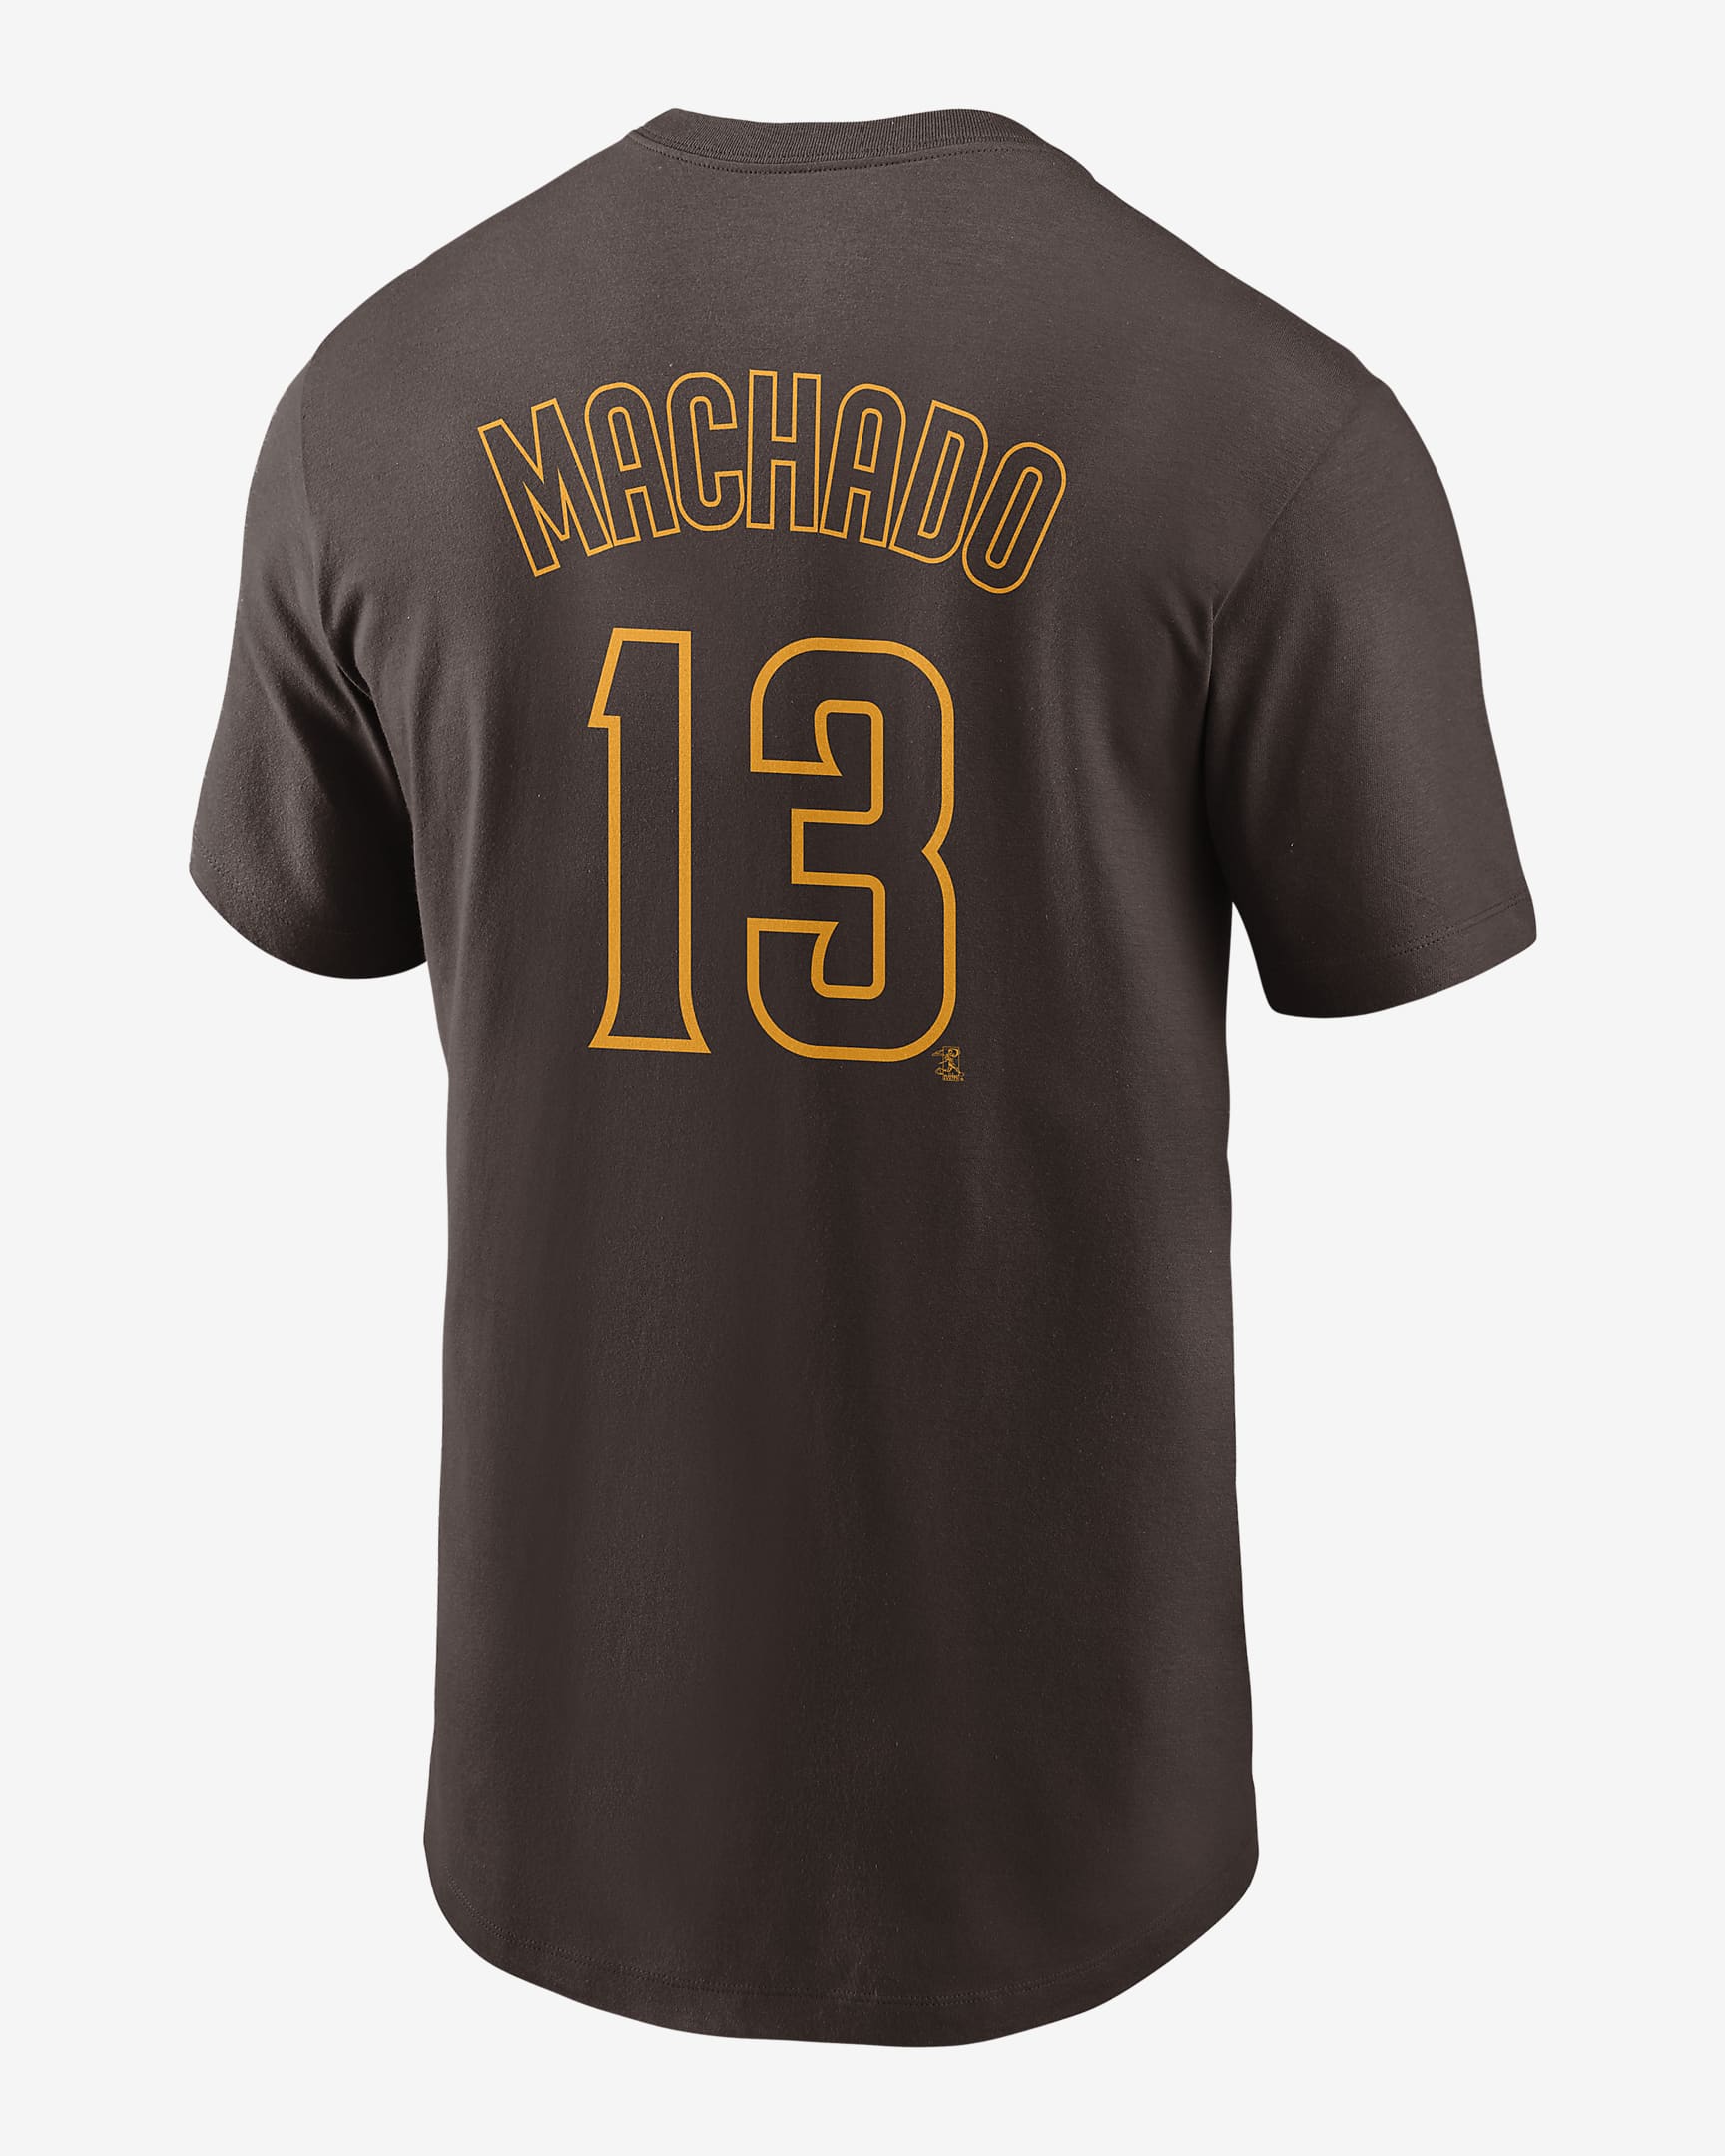 MLB San Diego Padres (Manny Machado) Men's T-Shirt. Nike.com